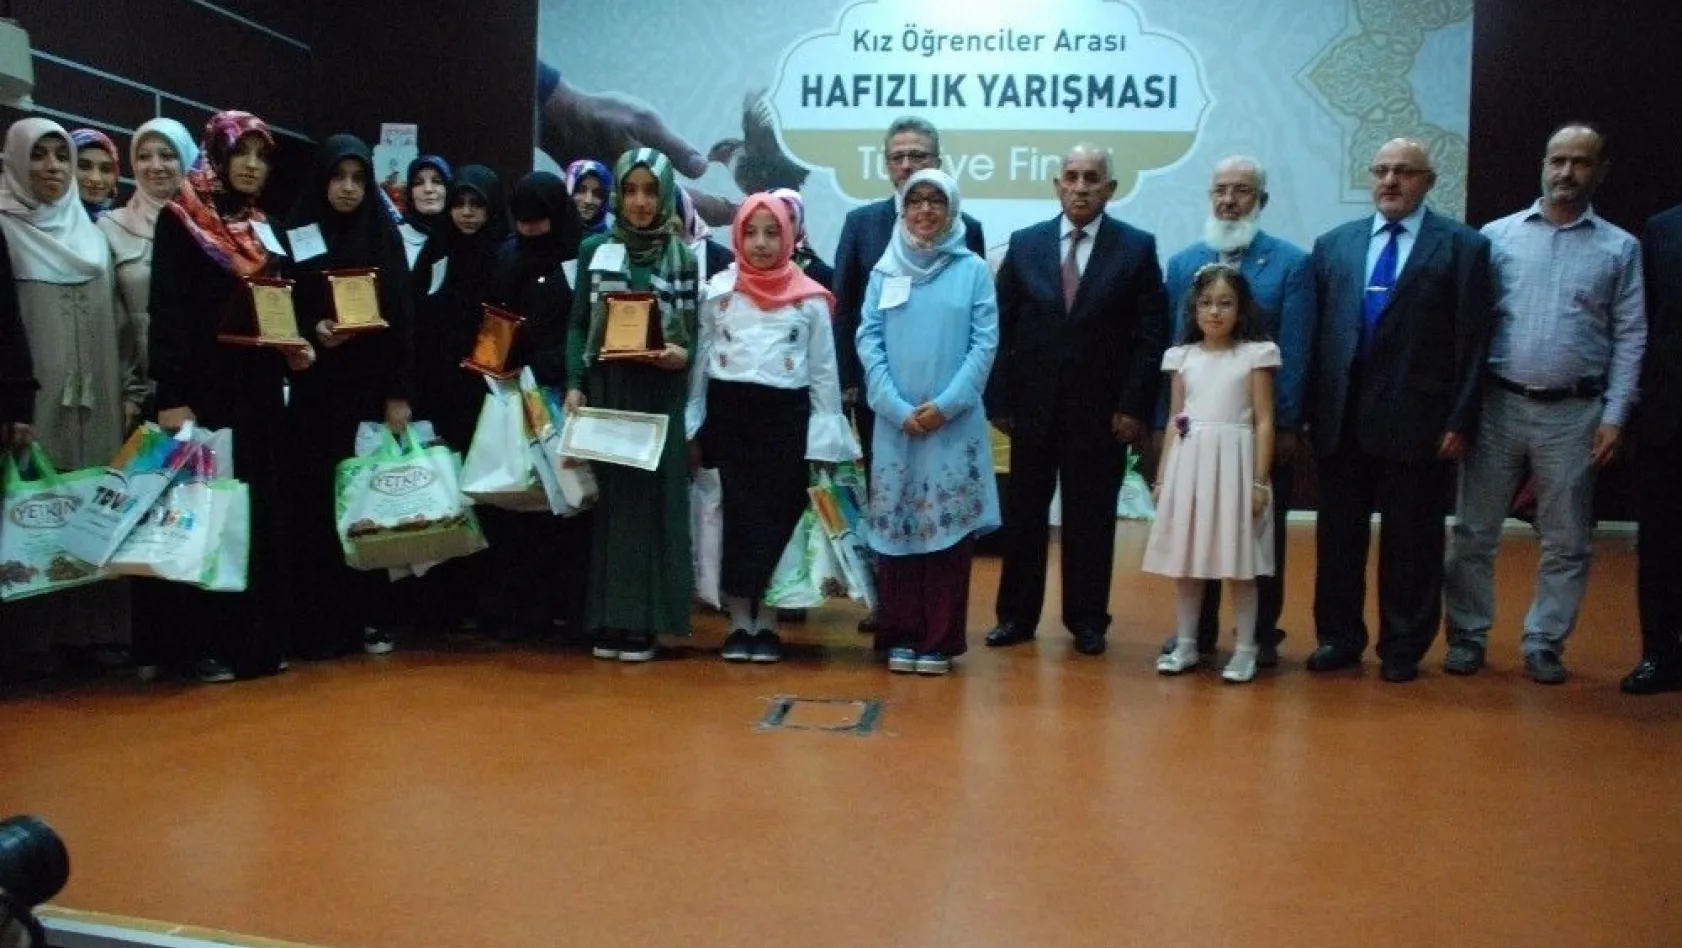 Kız Öğrenciler Hafızlık Yarışması Türkiye finali Adıyaman'da yapıldı
